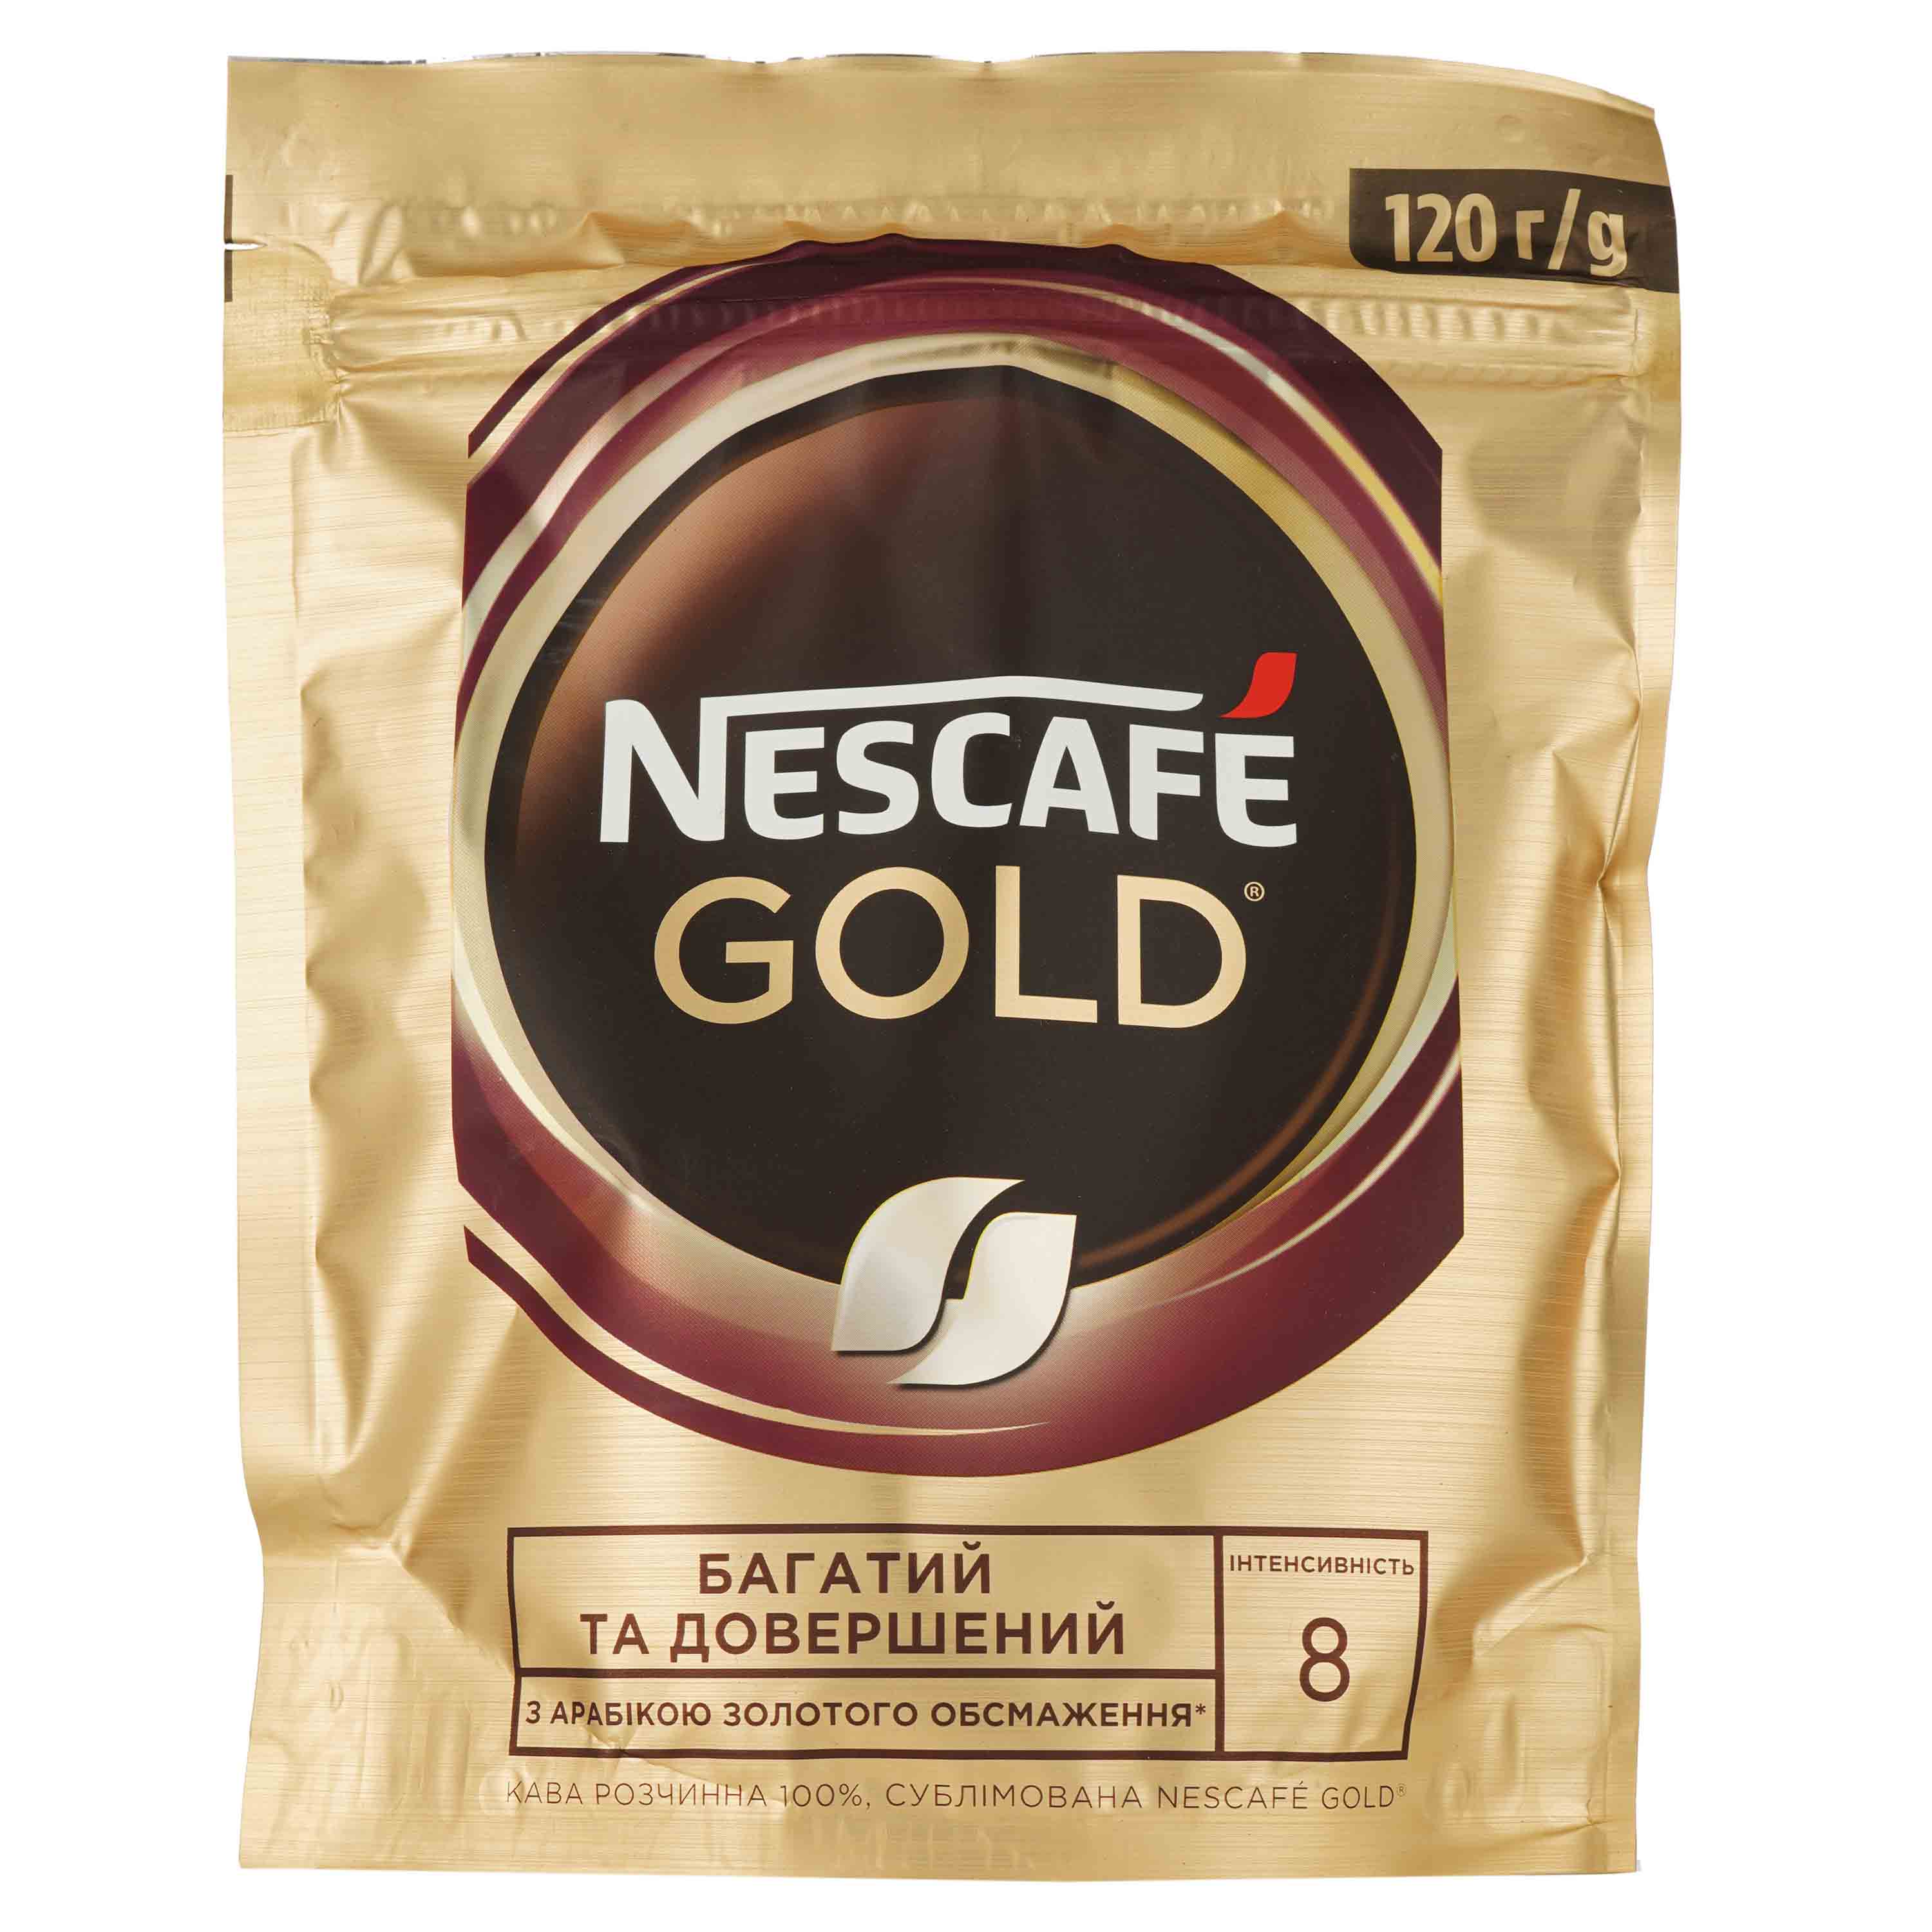 Кава розчинна Nescafe Gold, 120 г (663485) - фото 1